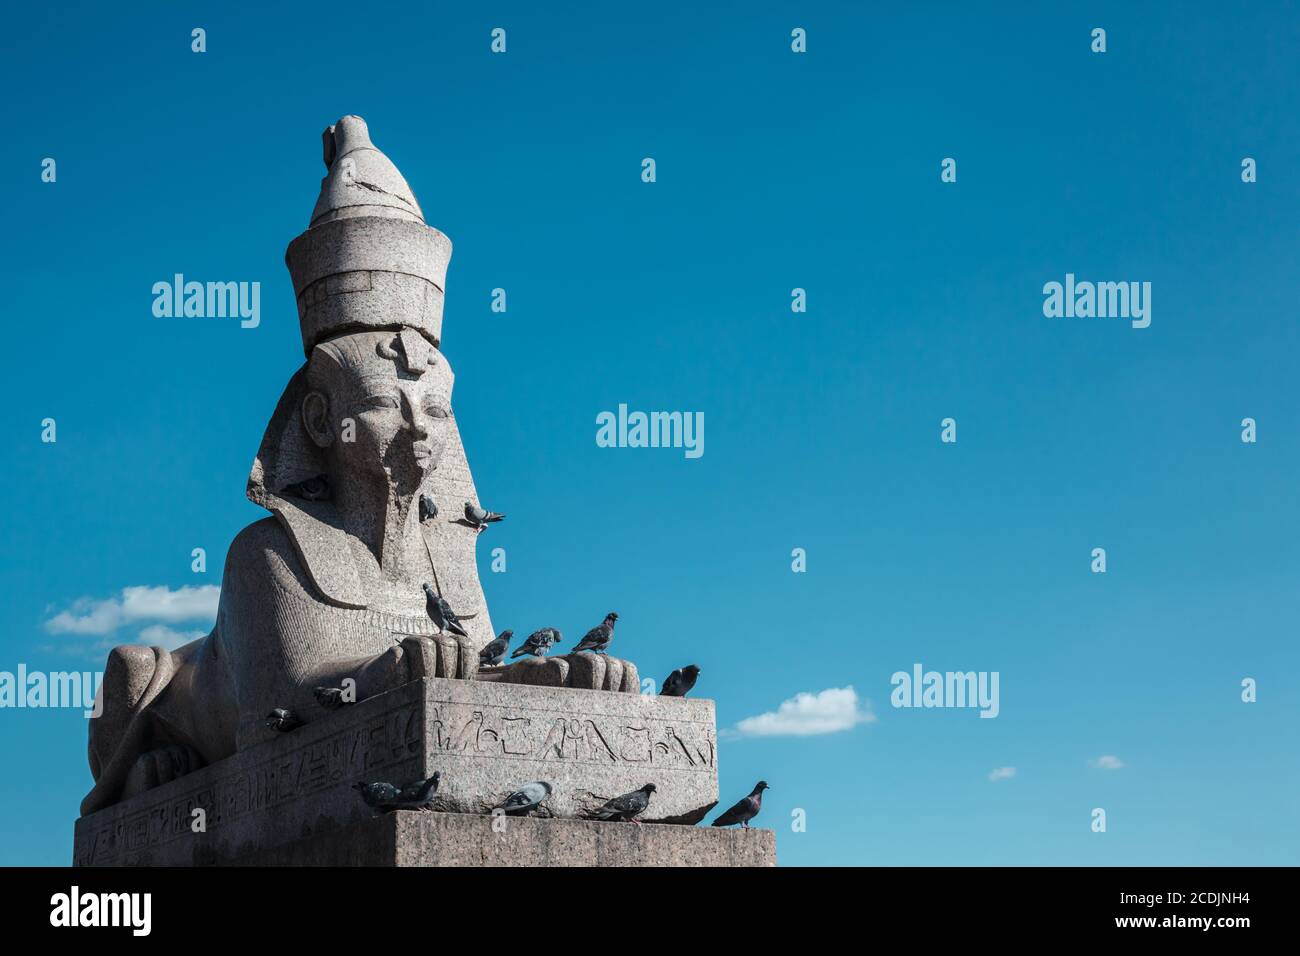 Alte ägyptische Sphinx Skulptur aus grauem Granit gegen blauen Himmel, viele Tauben sitzen auf alten Skulptur Stockfoto